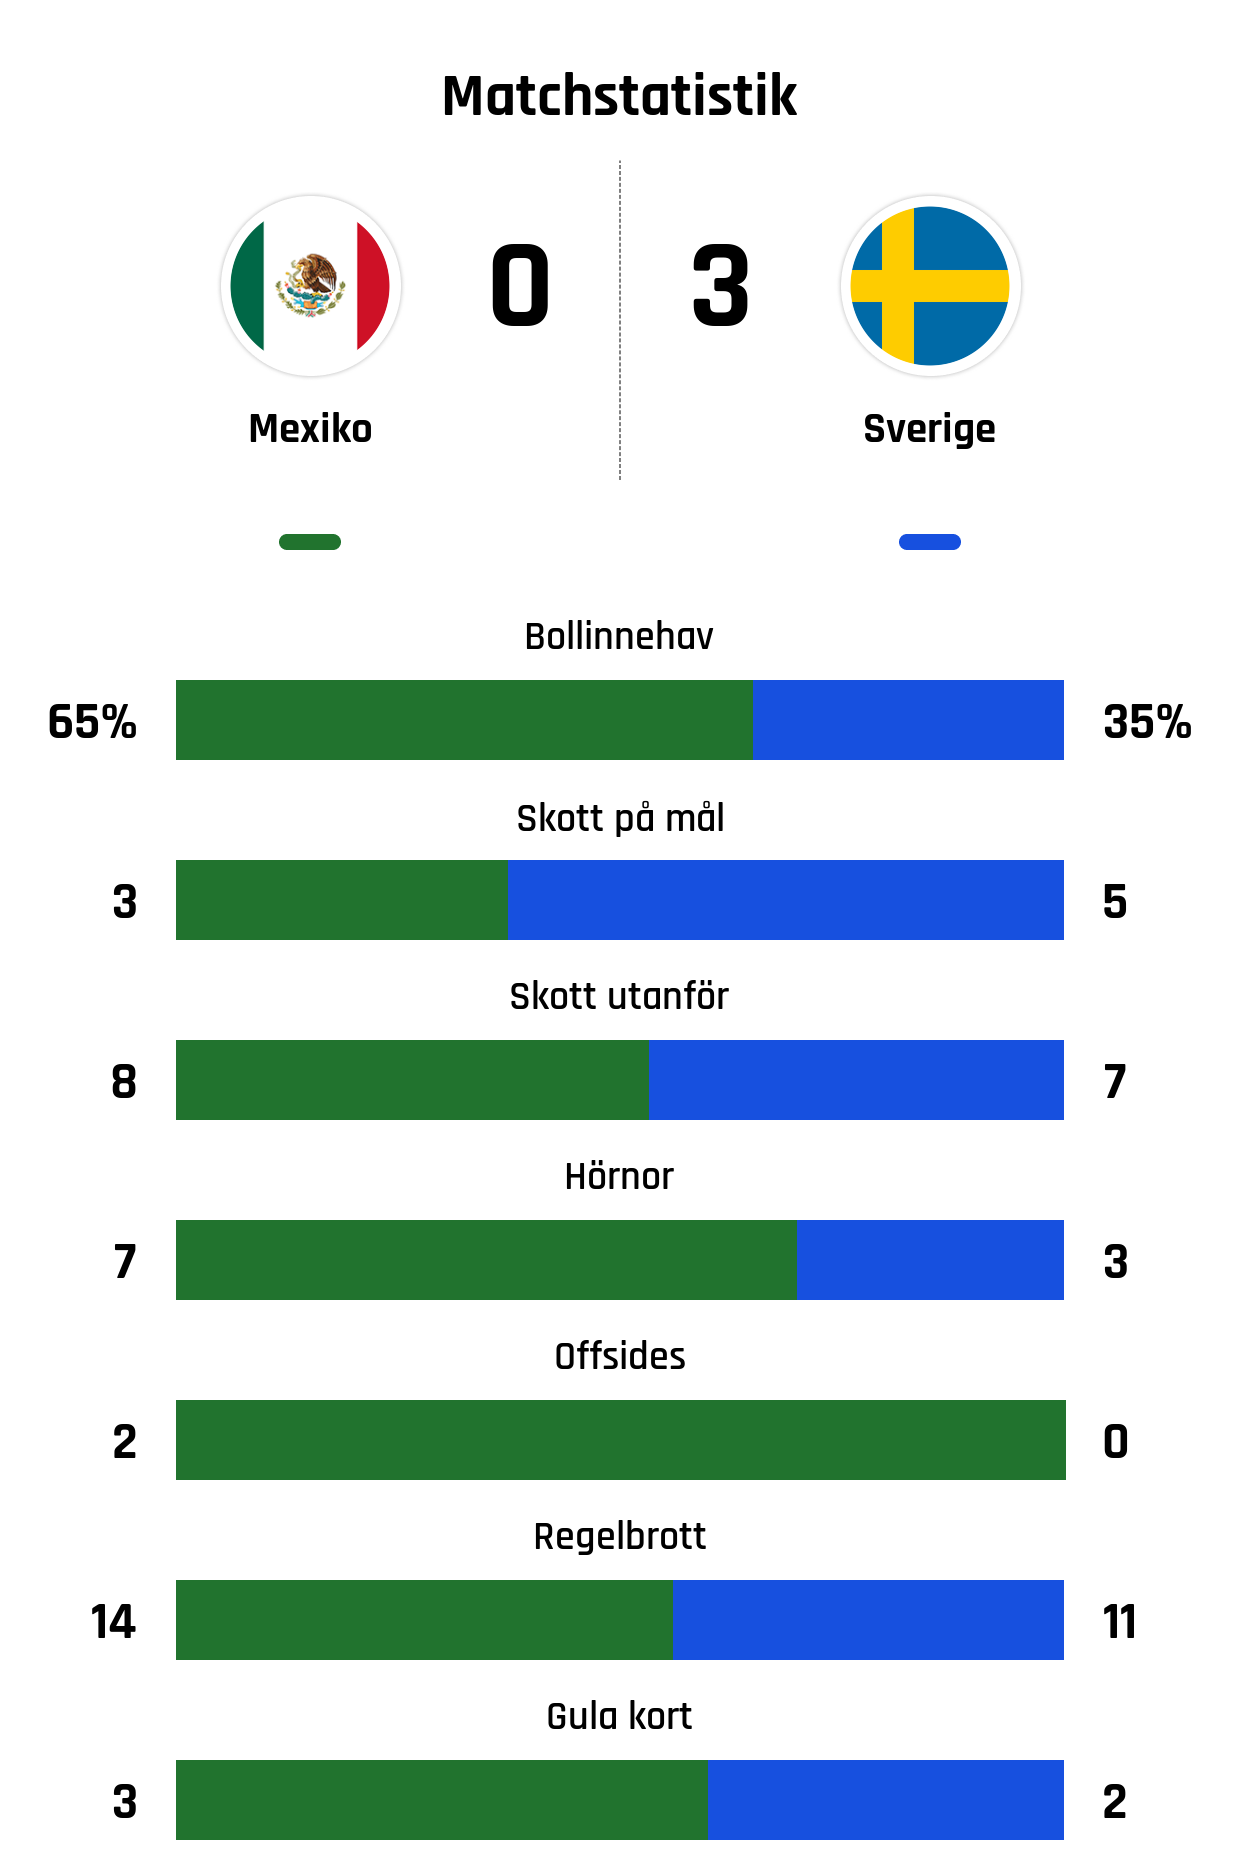 Bollinnehav 65%-35%
Skott på mål 3-5
Skott utanför 8-7
Hörnor 7-3
Offsides 2-0
Regelbrott 14-11
Gula kort 3-2